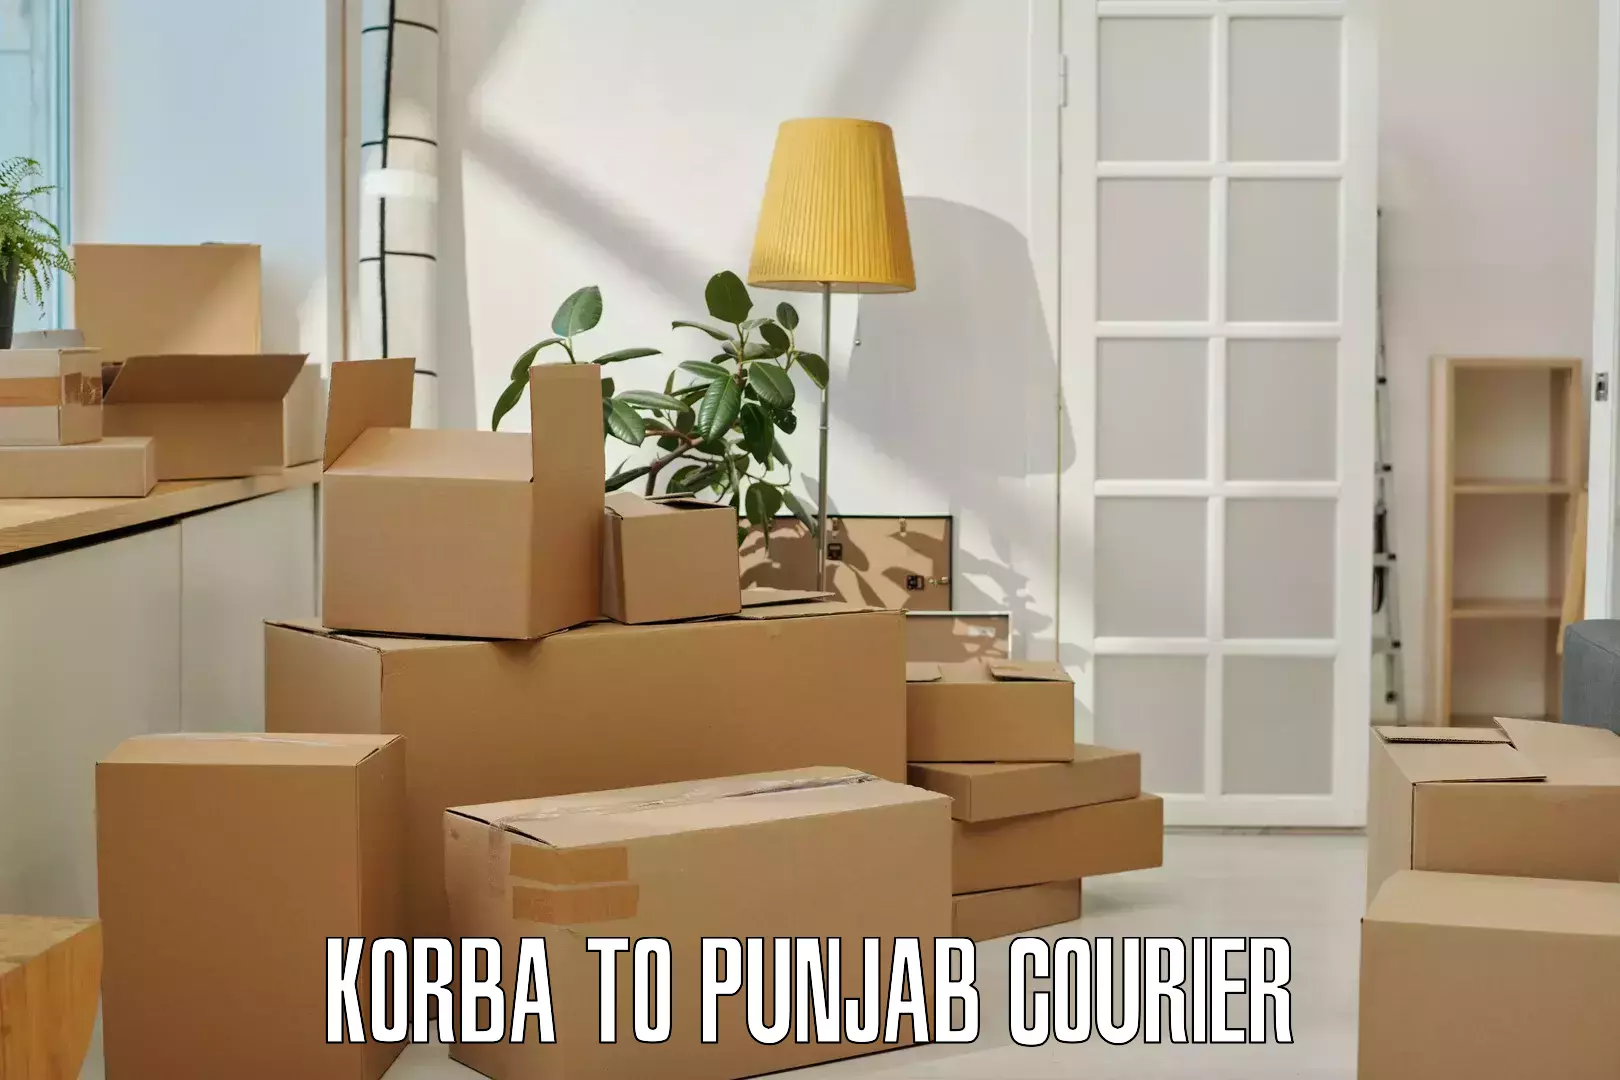 Courier service innovation Korba to Malerkotla